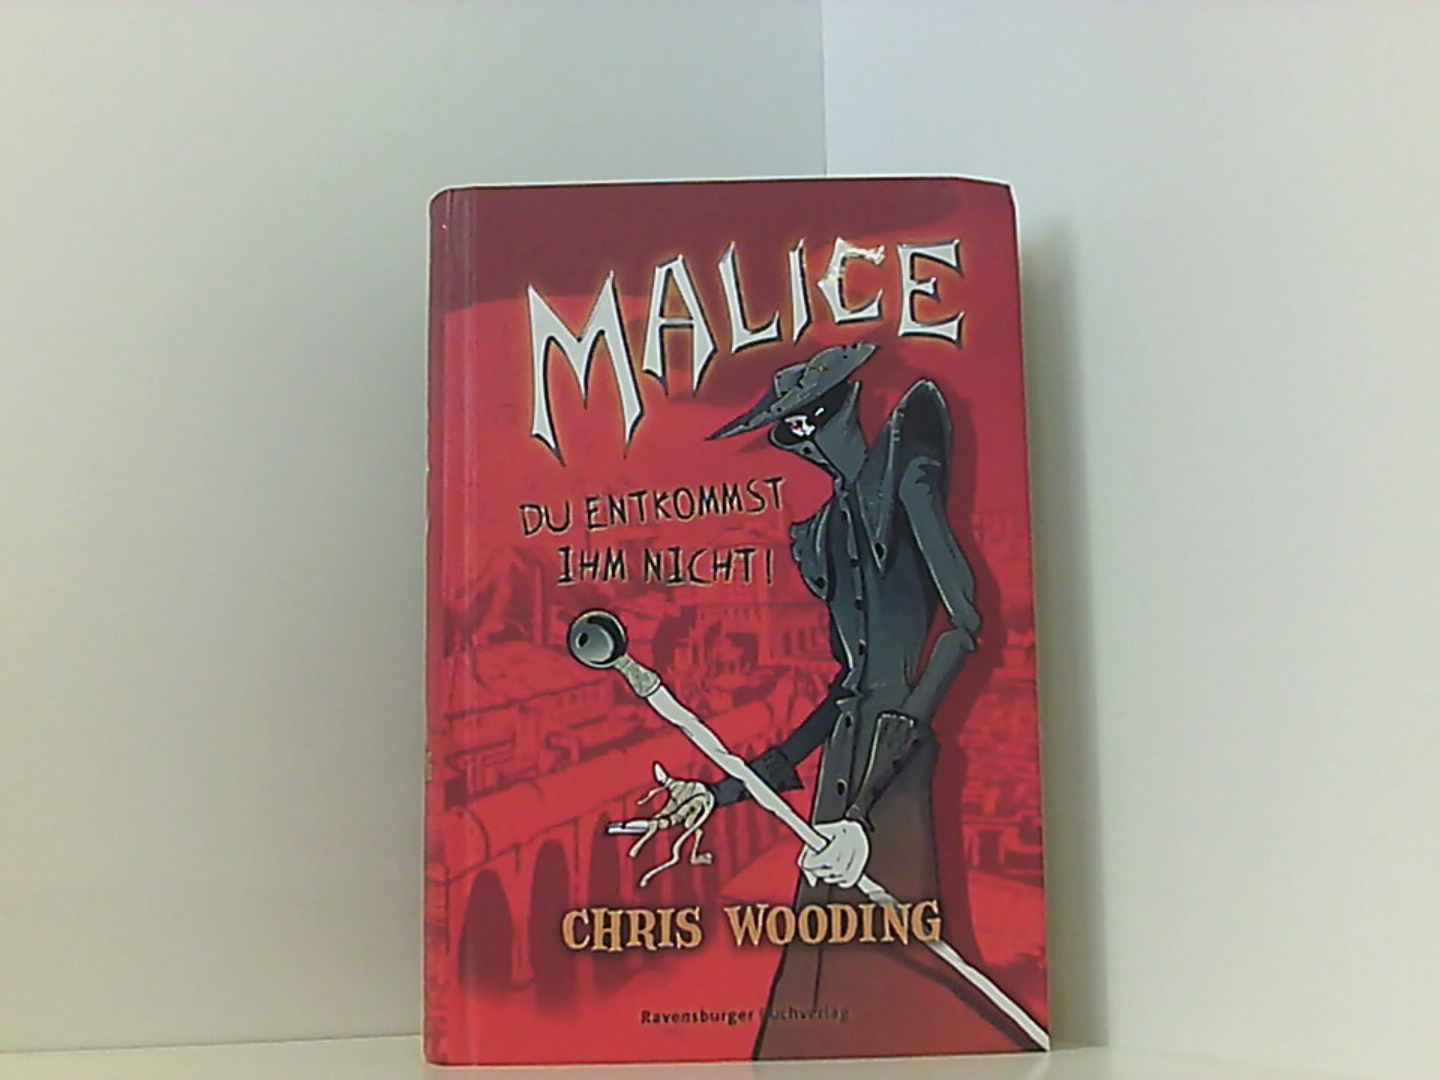 Malice: Du entkommst ihm nicht (Jugendliteratur ab 12 Jahre)  1 - Wooding, Chris, Dan Chernett  und Katarina Ganslandt